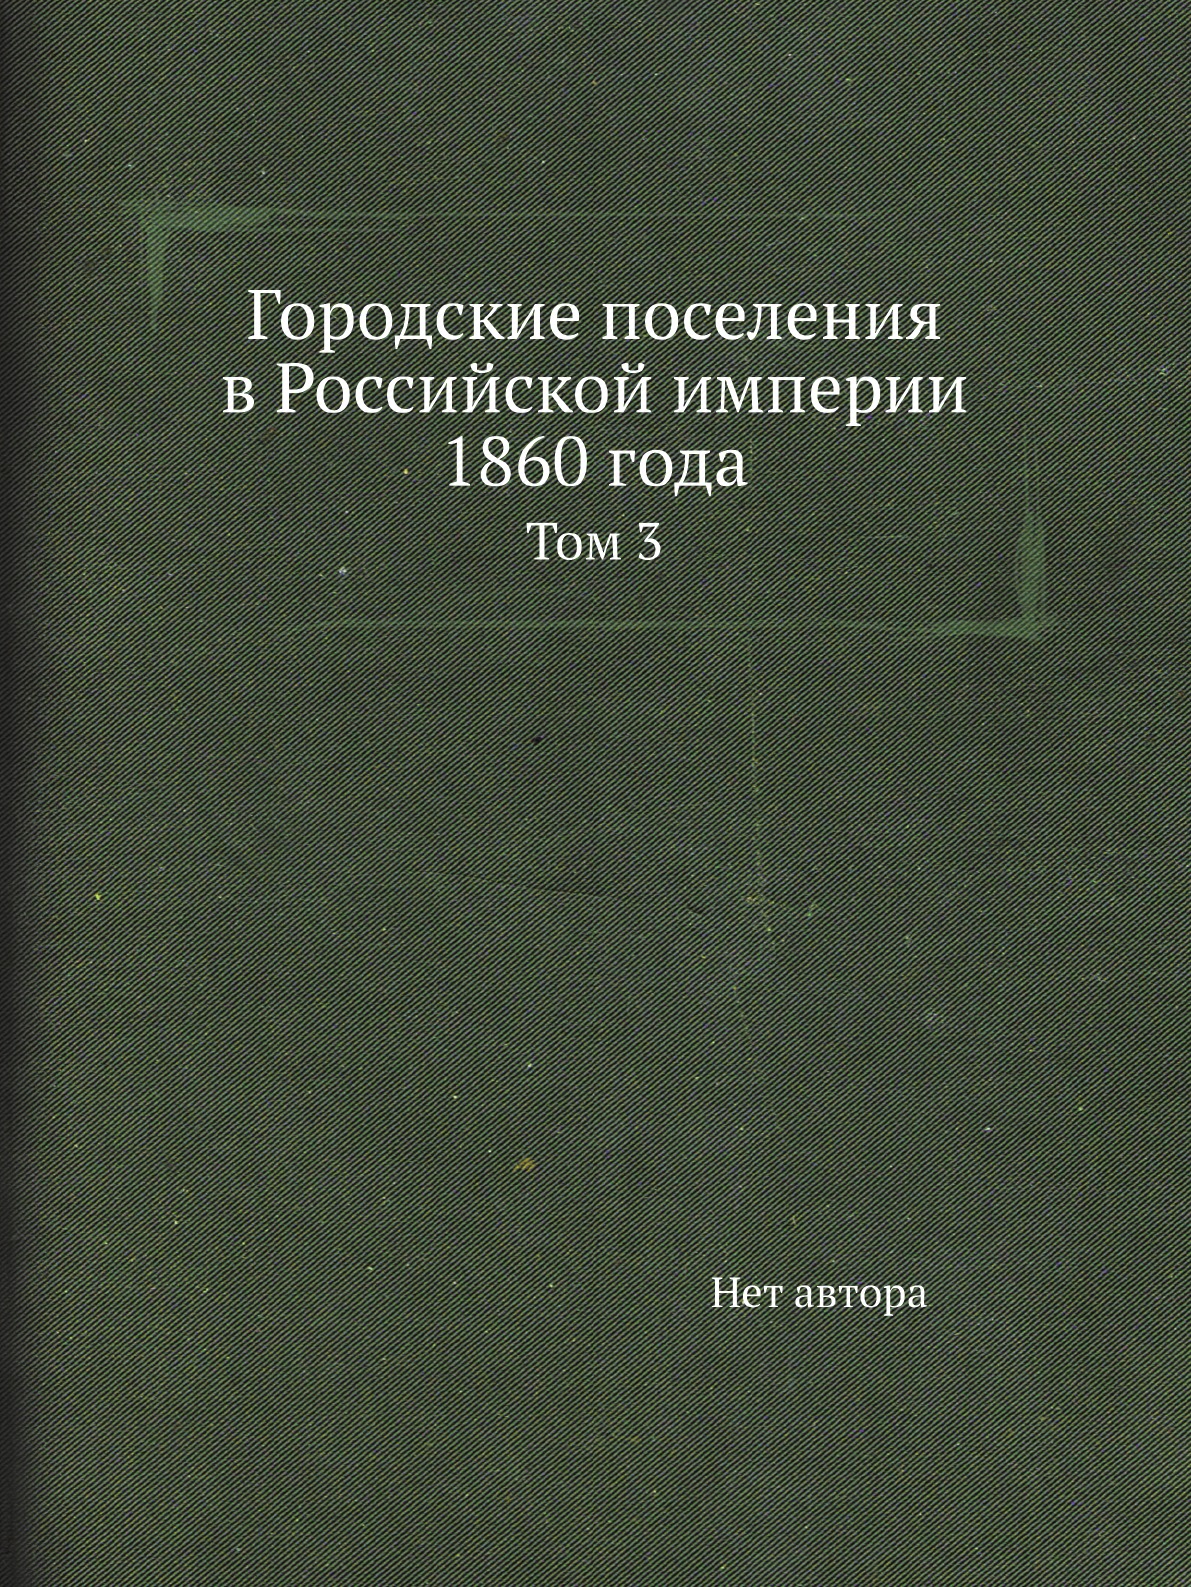 фото Книга городские поселения в российской империи 1860 года. том 3 нобель пресс